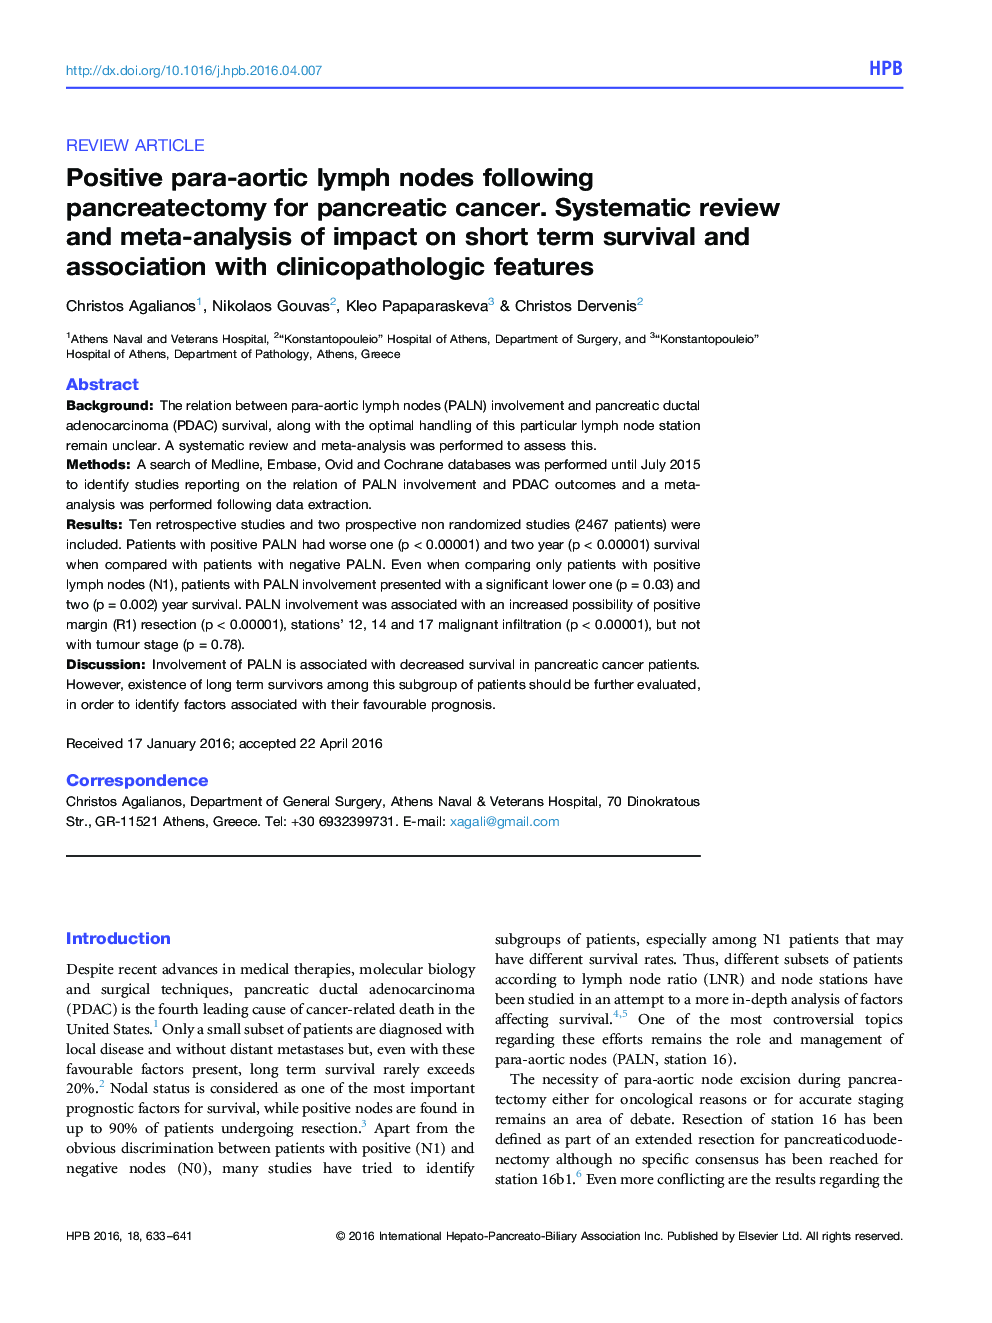 غدد لنفاوی پاراآئورت مثبت پس از پانکراتکتومی برای سرطان پانکراس؛ بررسی و تجزیه و تحلیل سیستماتیک تاثیر بقای کوتاه مدت و ارتباط با ویژگی های کلینیکو پاتولوژیک